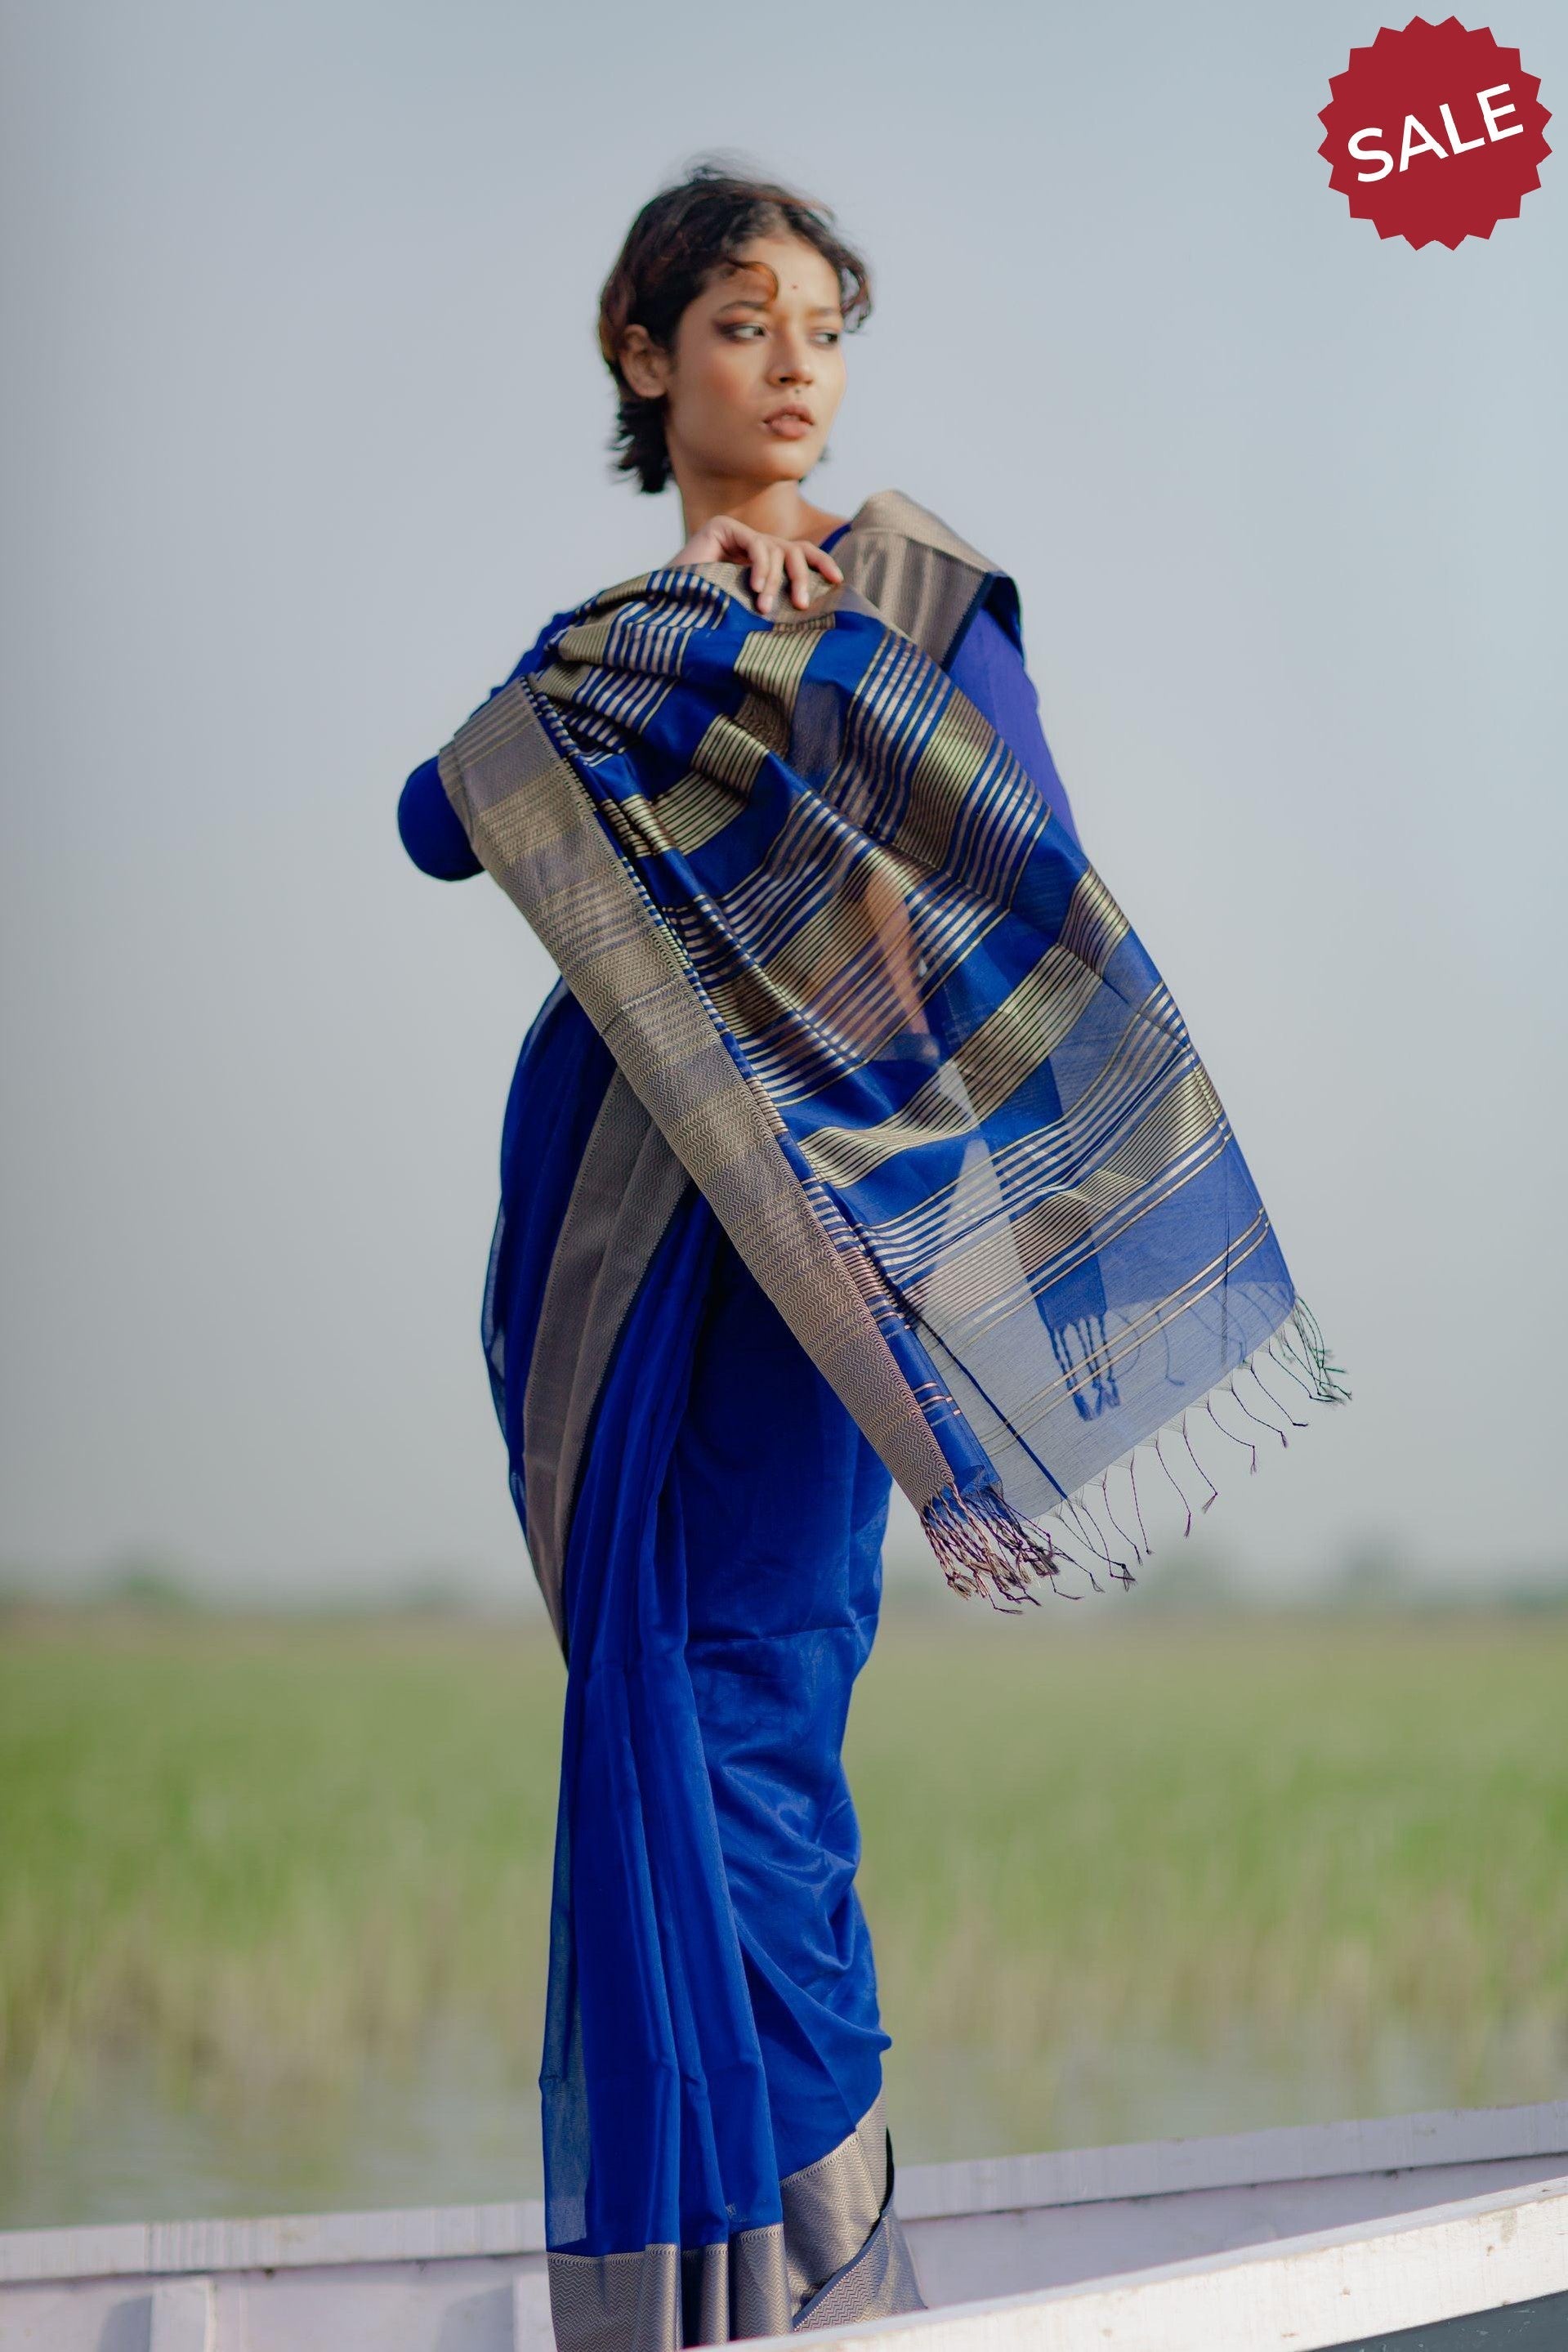 Seher - Royal blue Maheshwari Saree Kaisori